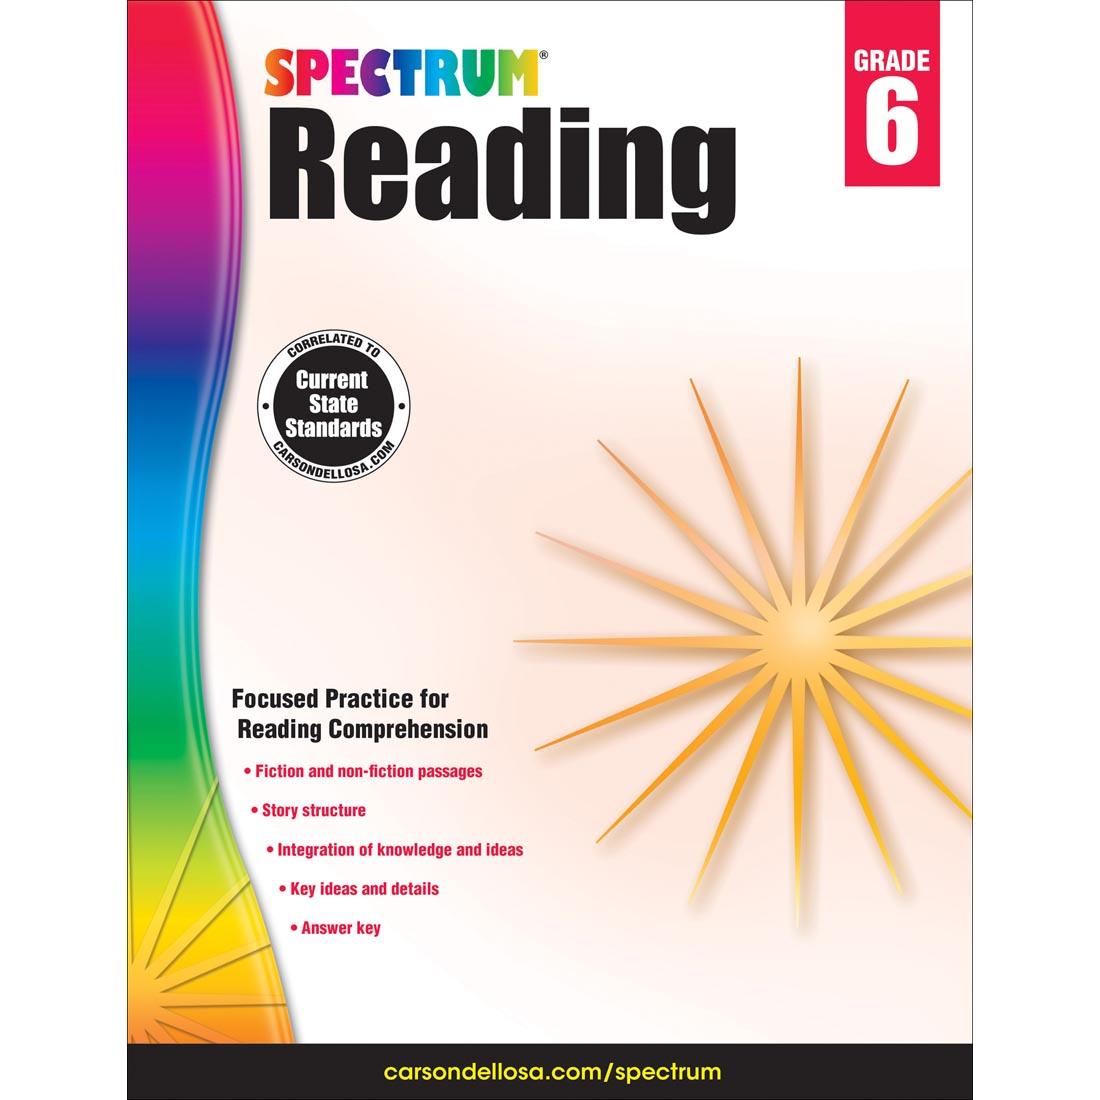 Spectrum Reading by Carson Dellosa Grade 6